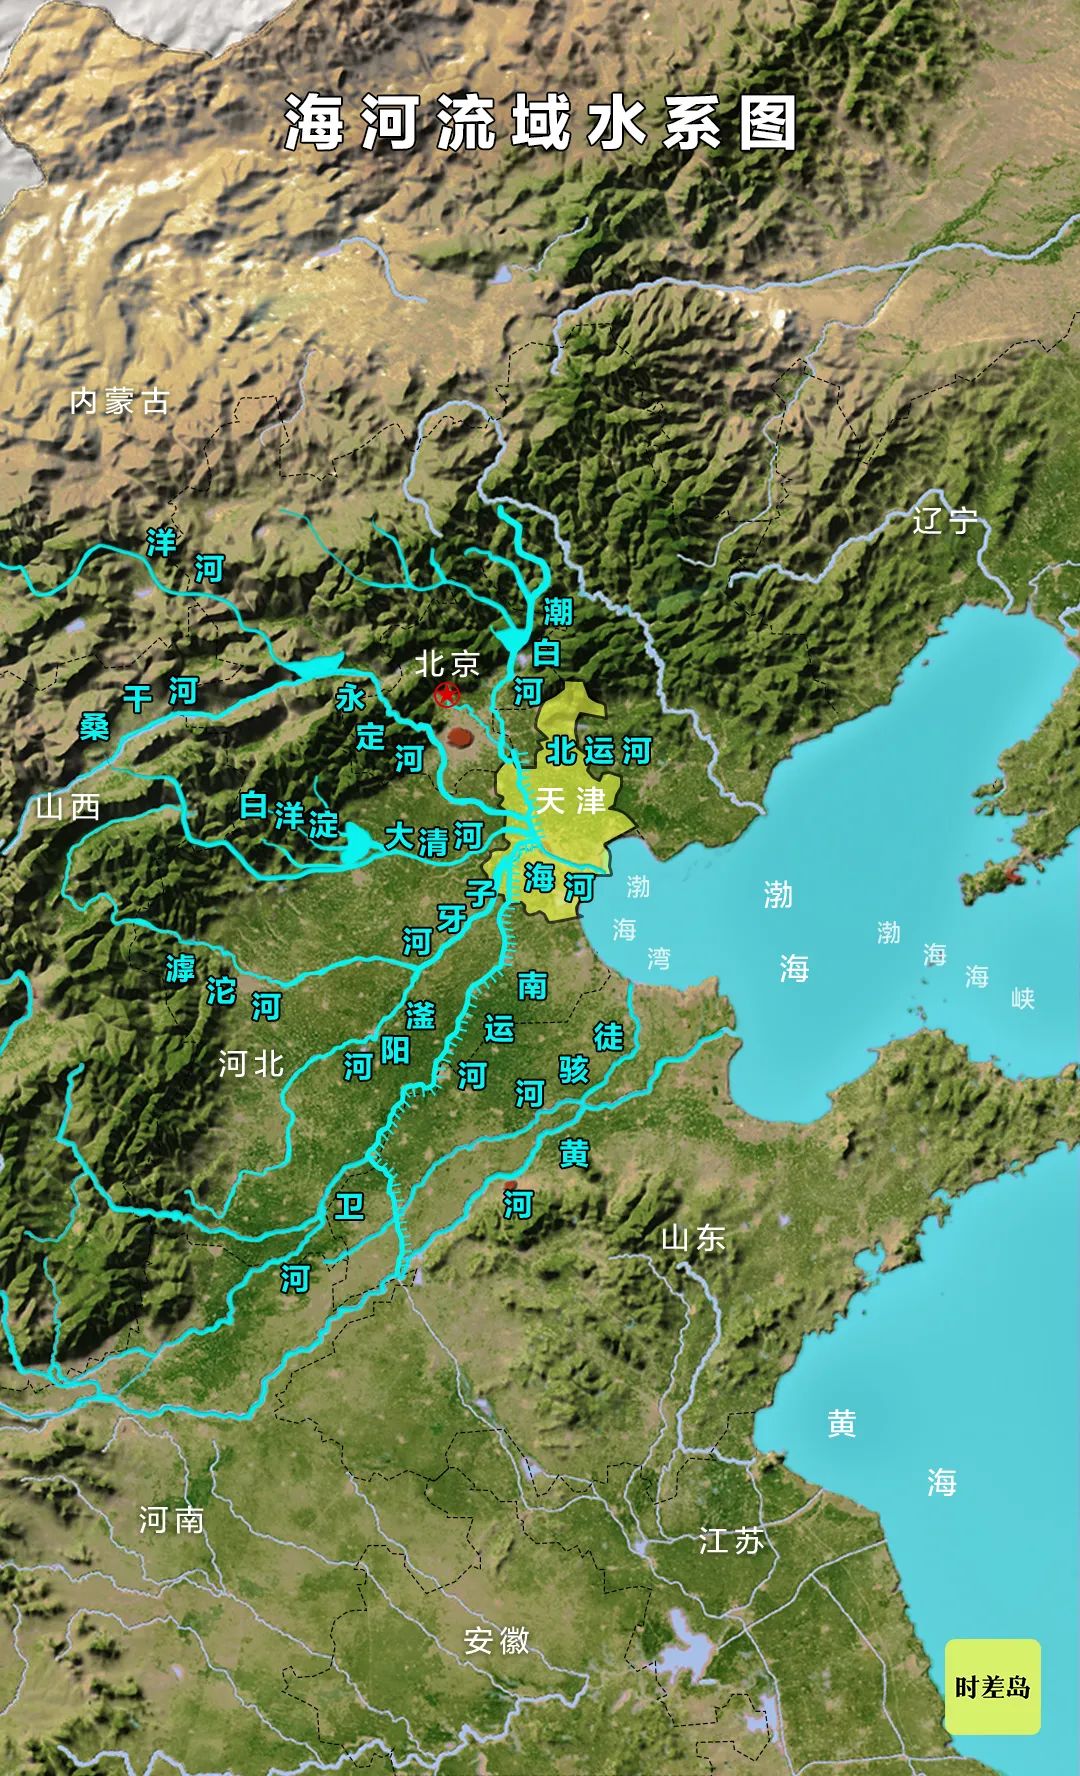 5省2直辖市形似一把巨扇海河流域水系图途径山西,内蒙古,河南,河北